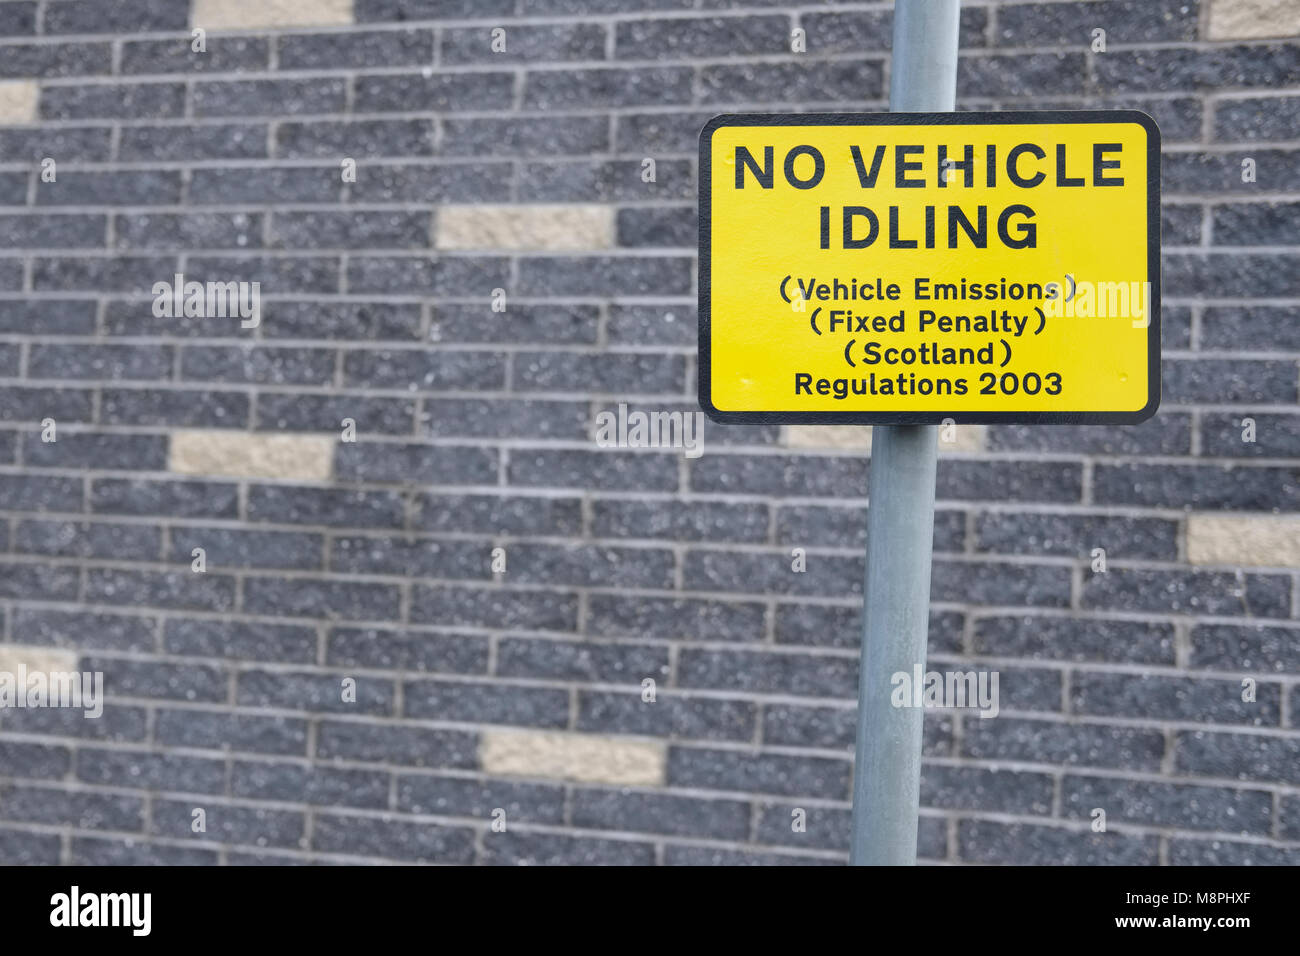 Kein Fahrzeug im Leerlauf Leerlauf feste Strafe Kraftfahrzeugemissionen Pollution Act Schild an der Straße Straße in der Stadt Stockfoto